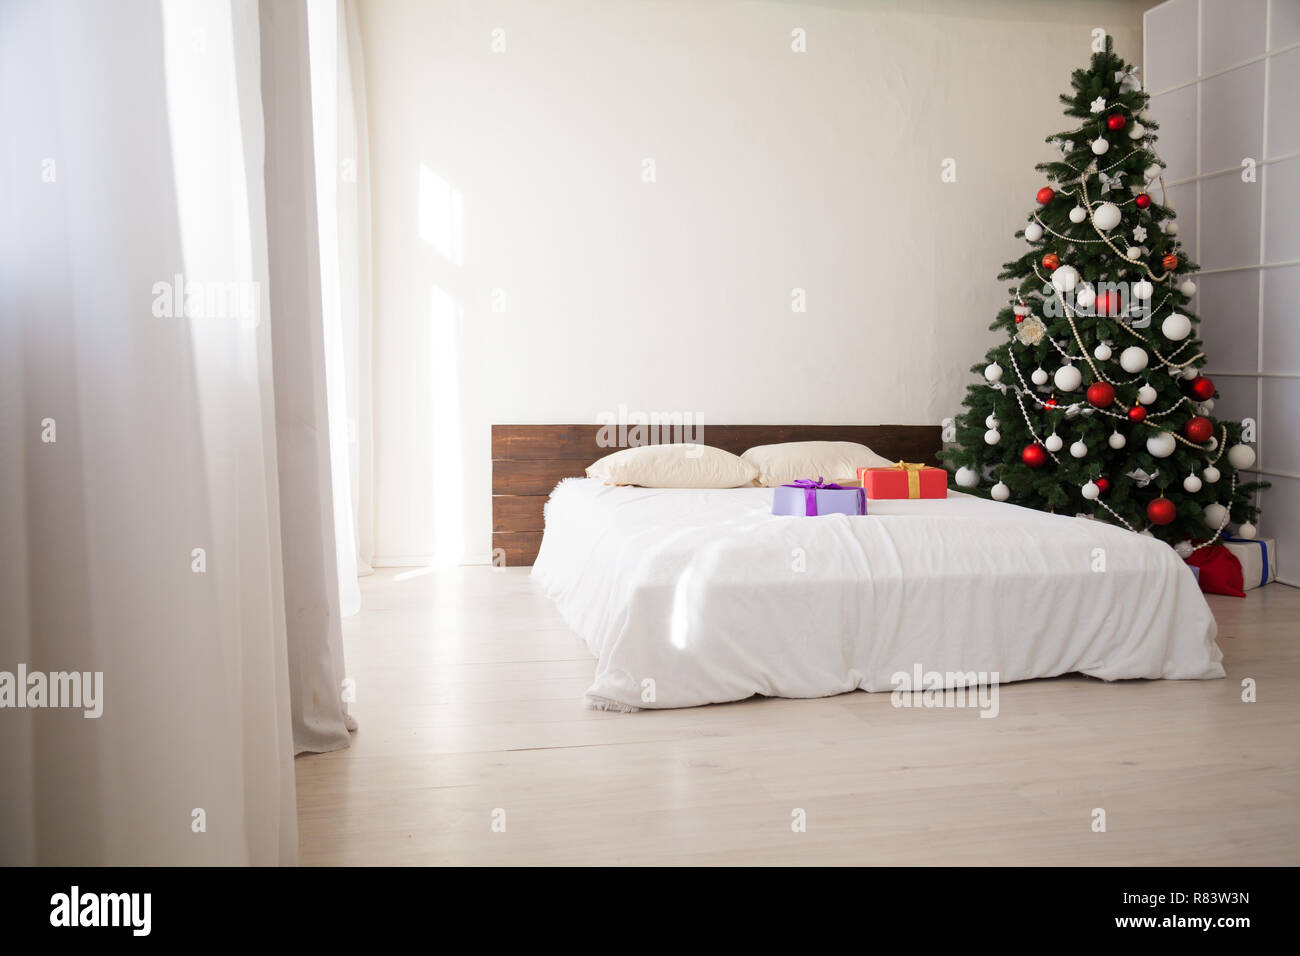 Weihnachten Schlafzimmer mit Bett Geschenke tannenbaum Postkarte  Stockfotografie - Alamy